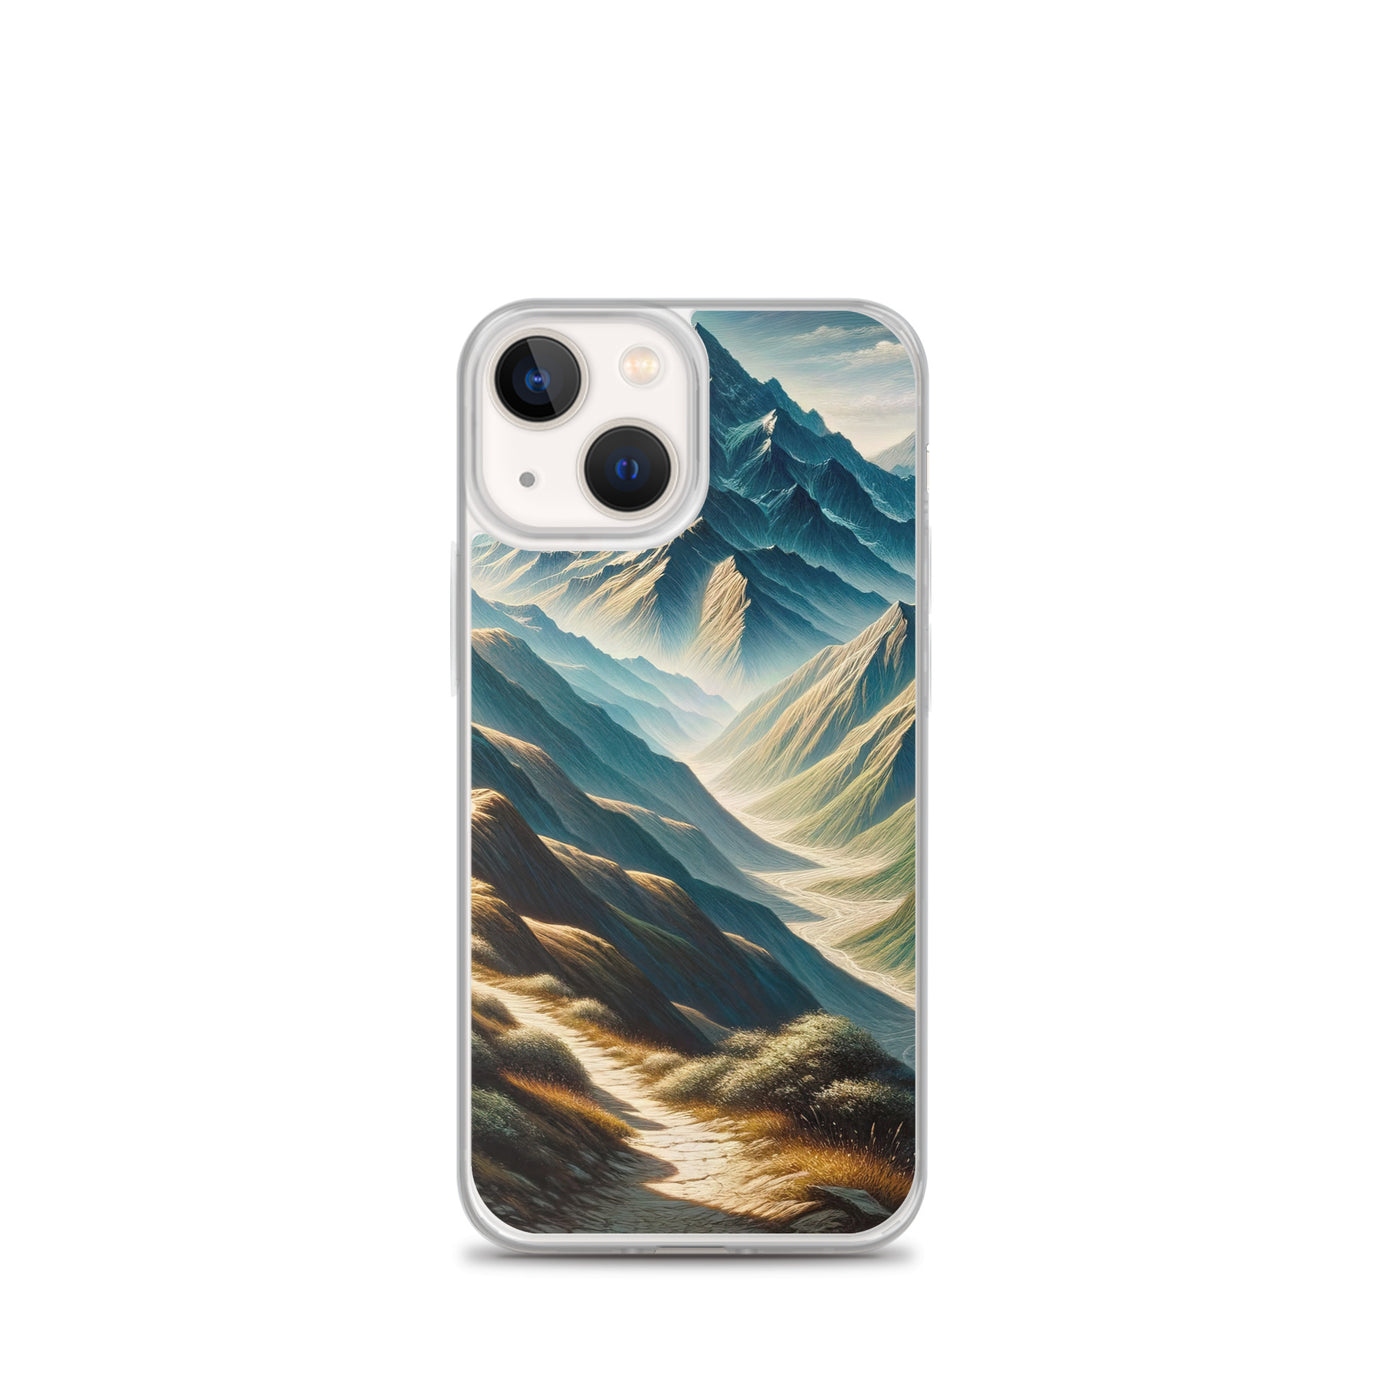 Berglandschaft: Acrylgemälde mit hervorgehobenem Pfad - iPhone Schutzhülle (durchsichtig) berge xxx yyy zzz iPhone 13 mini